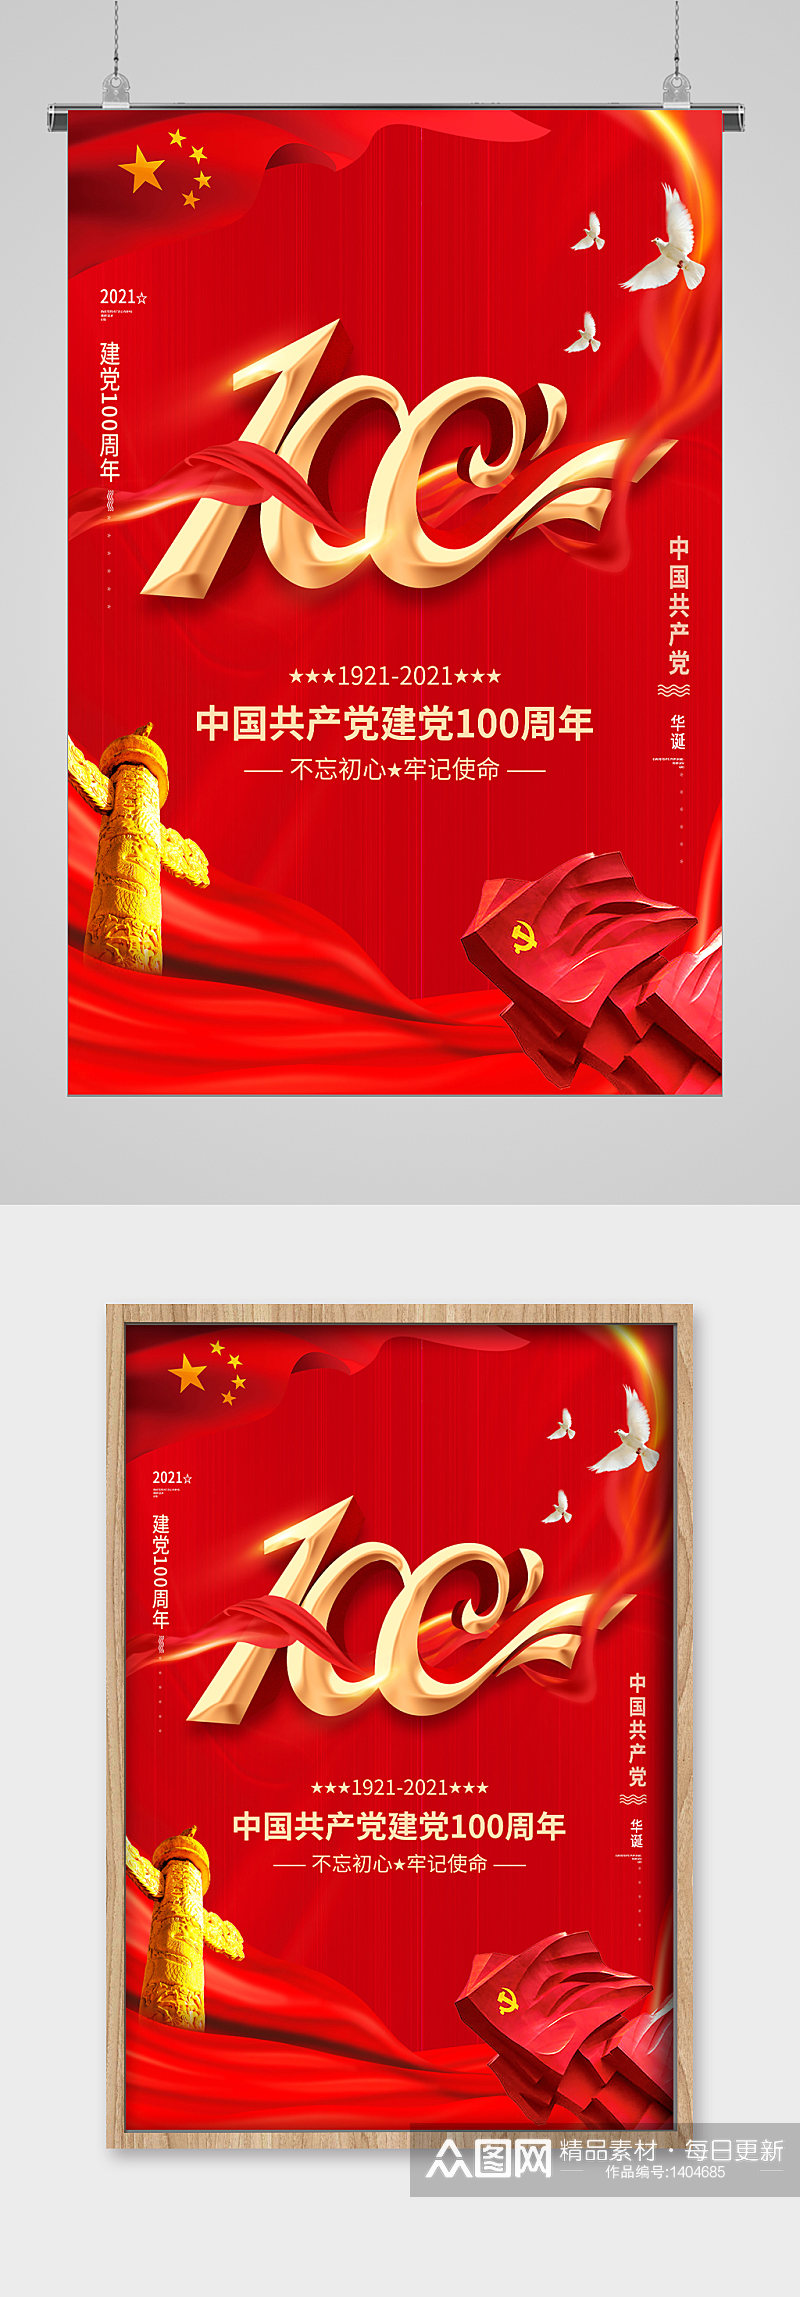 中国共产党成立100周年华诞宣传海报素材